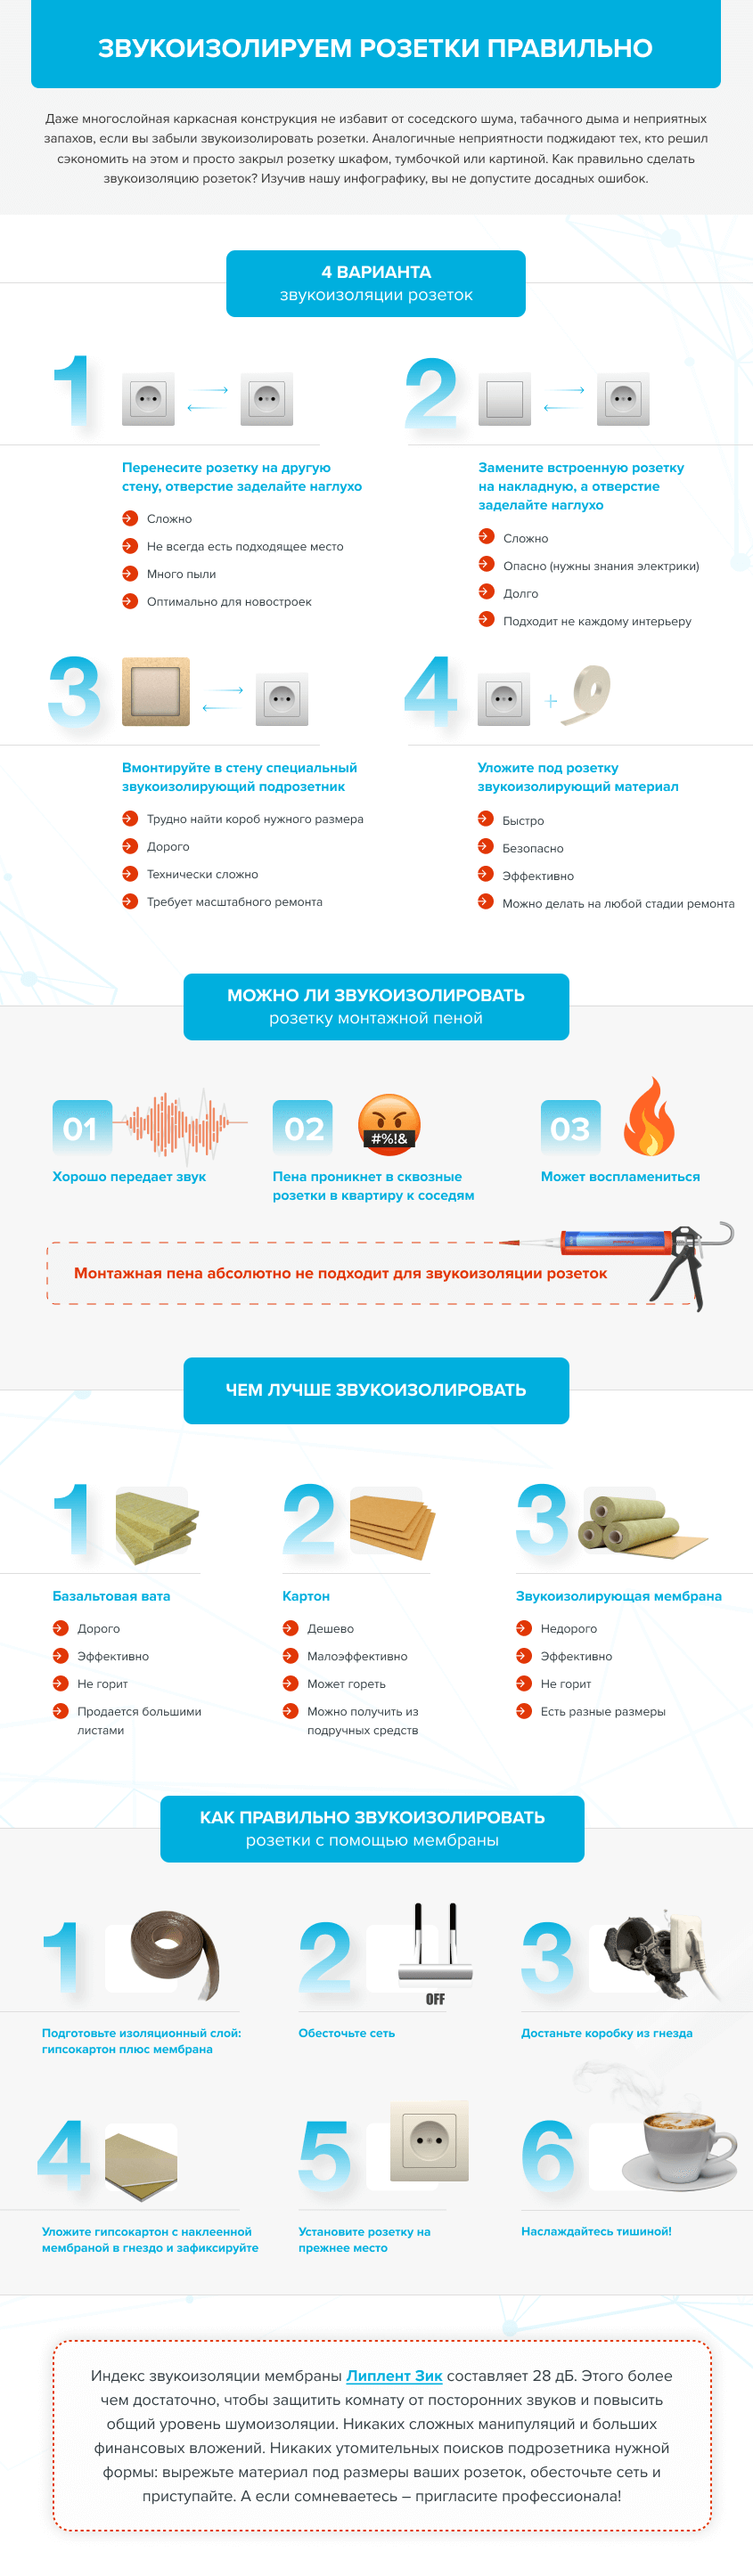 Инфографика для производителя звукоизоляционных и герметизирующих материалов